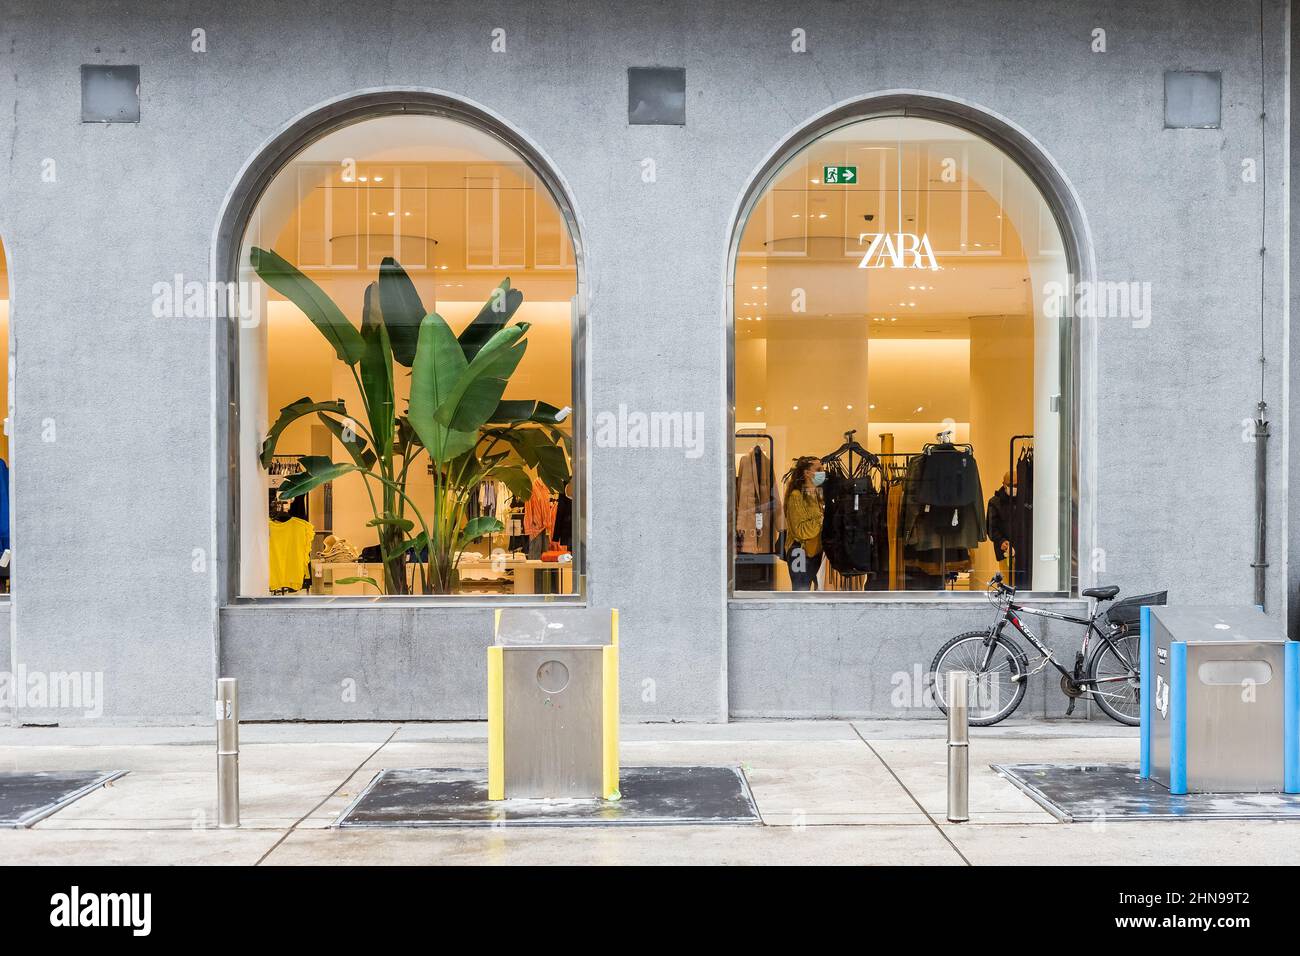 Ljubljana, Slovenia - 23 August, 2021: Zara brand clothing store display in  the city centre of Lljubljana Stock Photo - Alamy